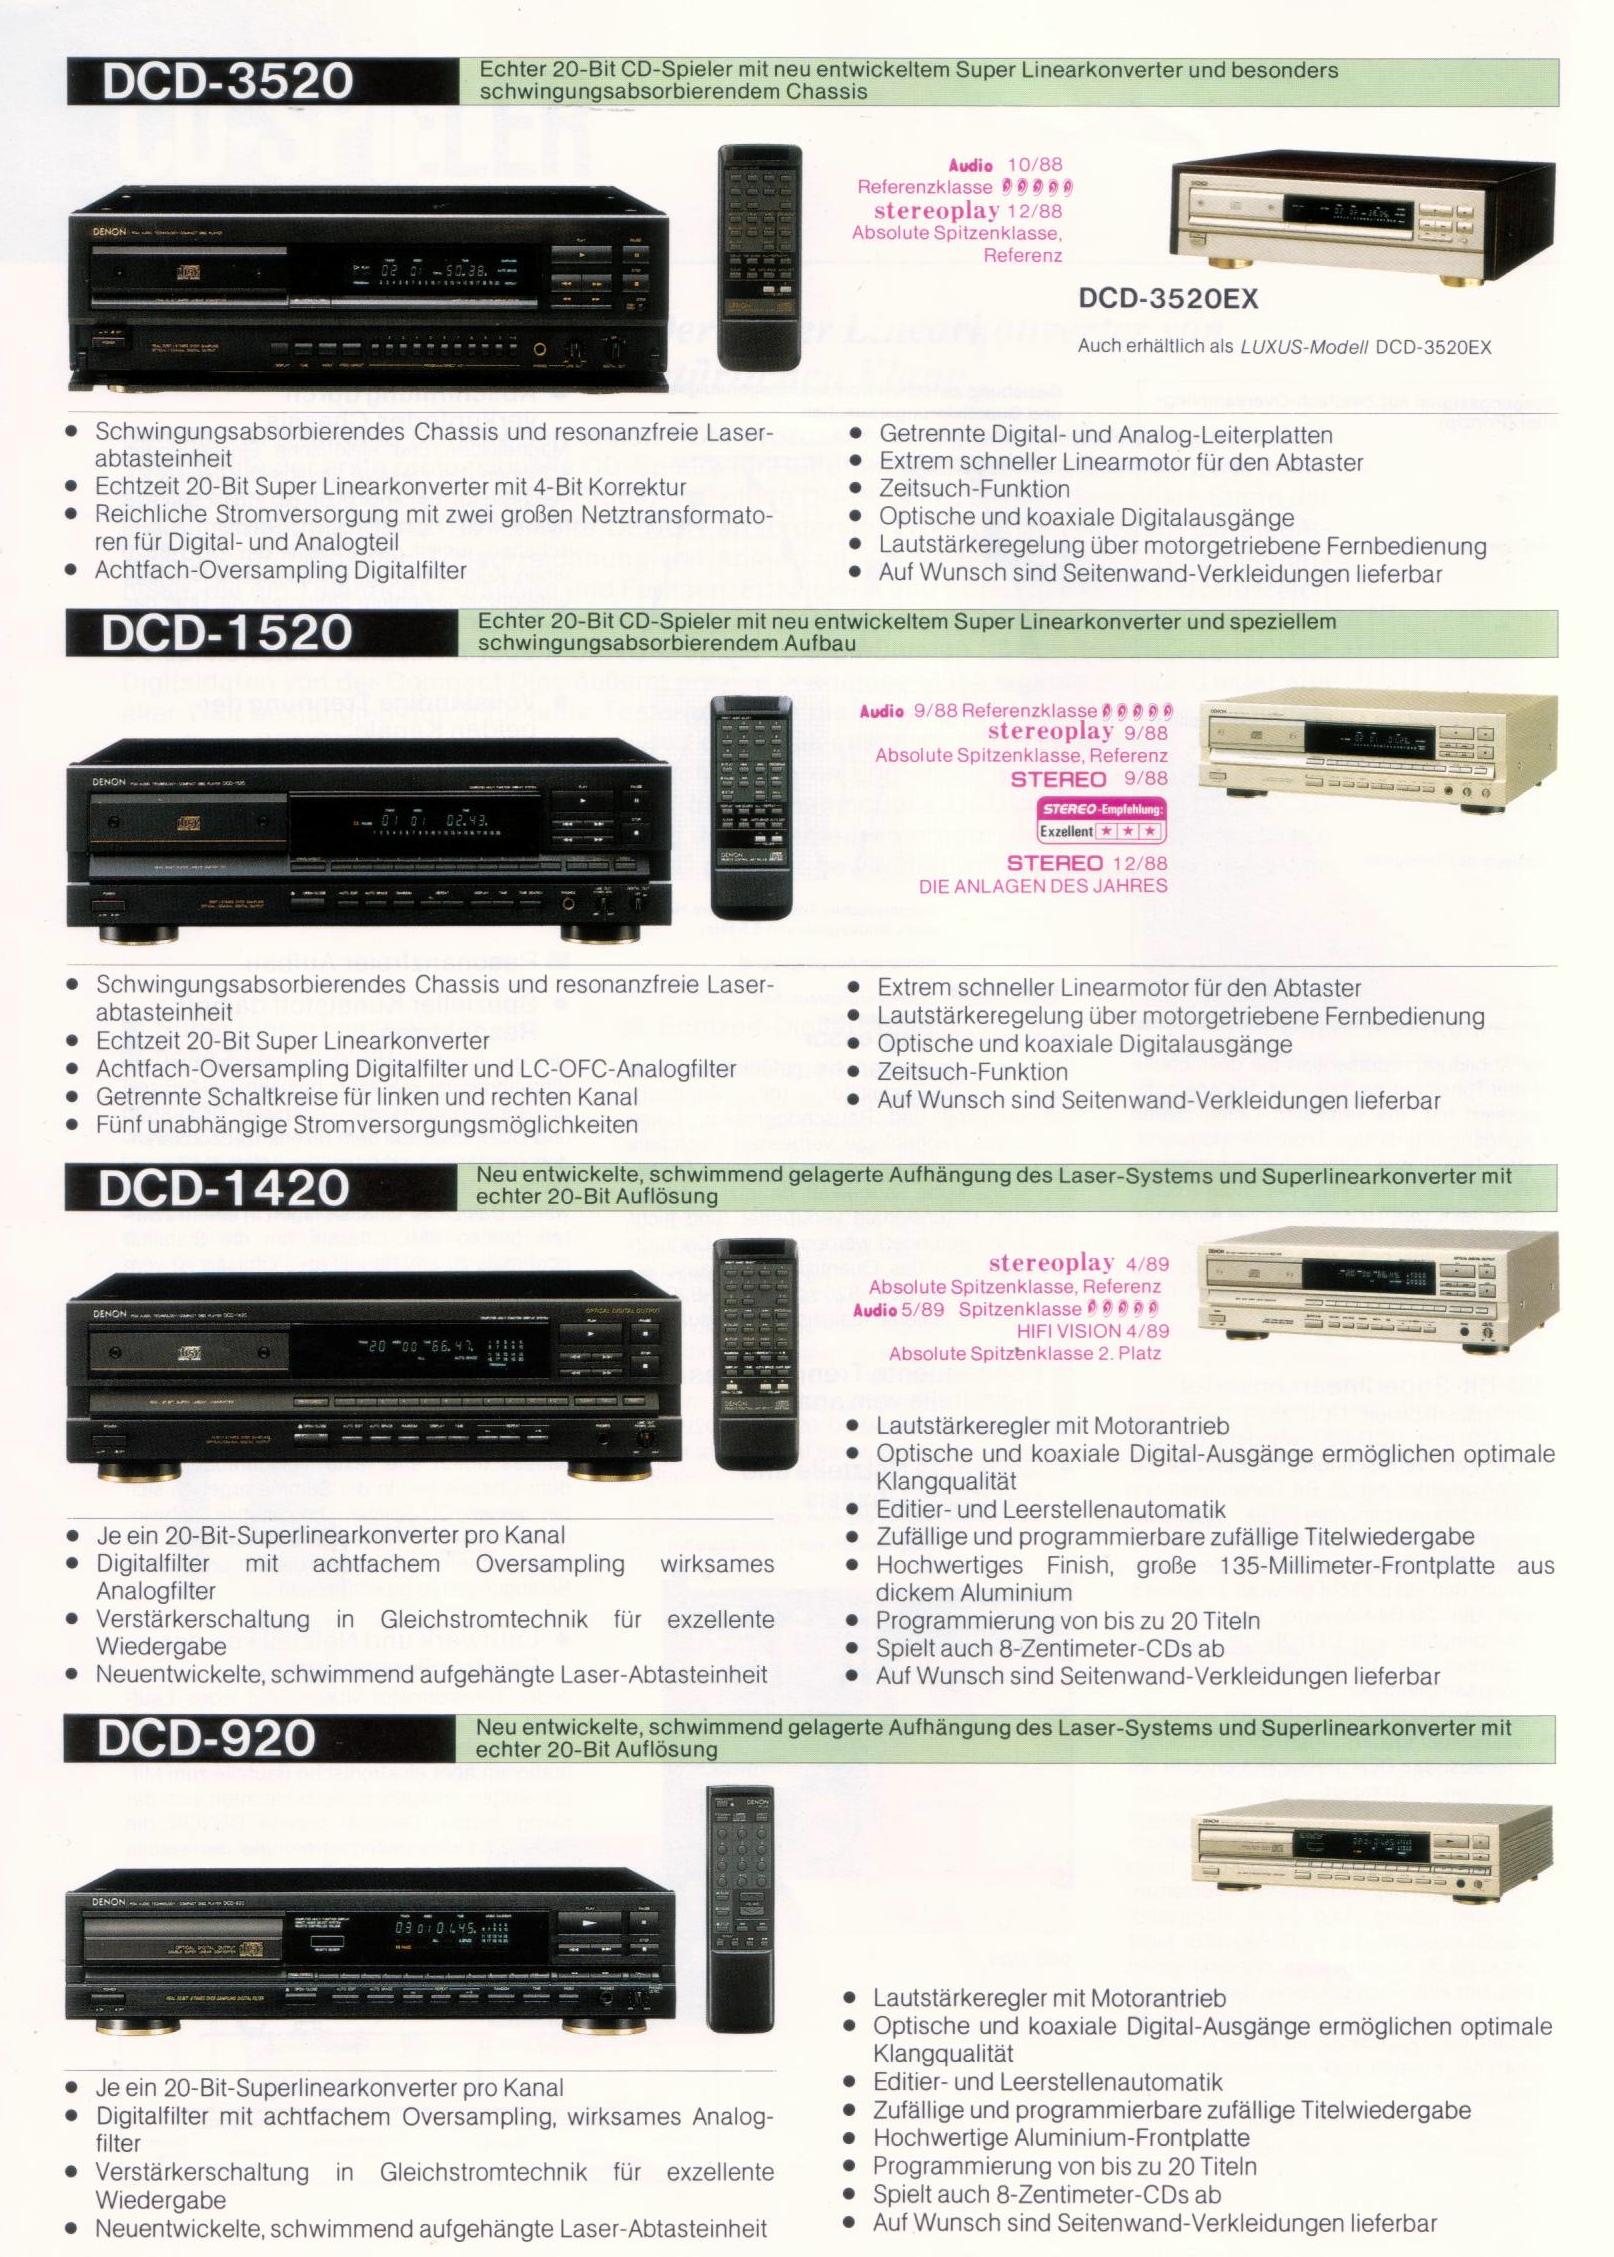 Denon DCD-1520-Prospekt-1989.jpg